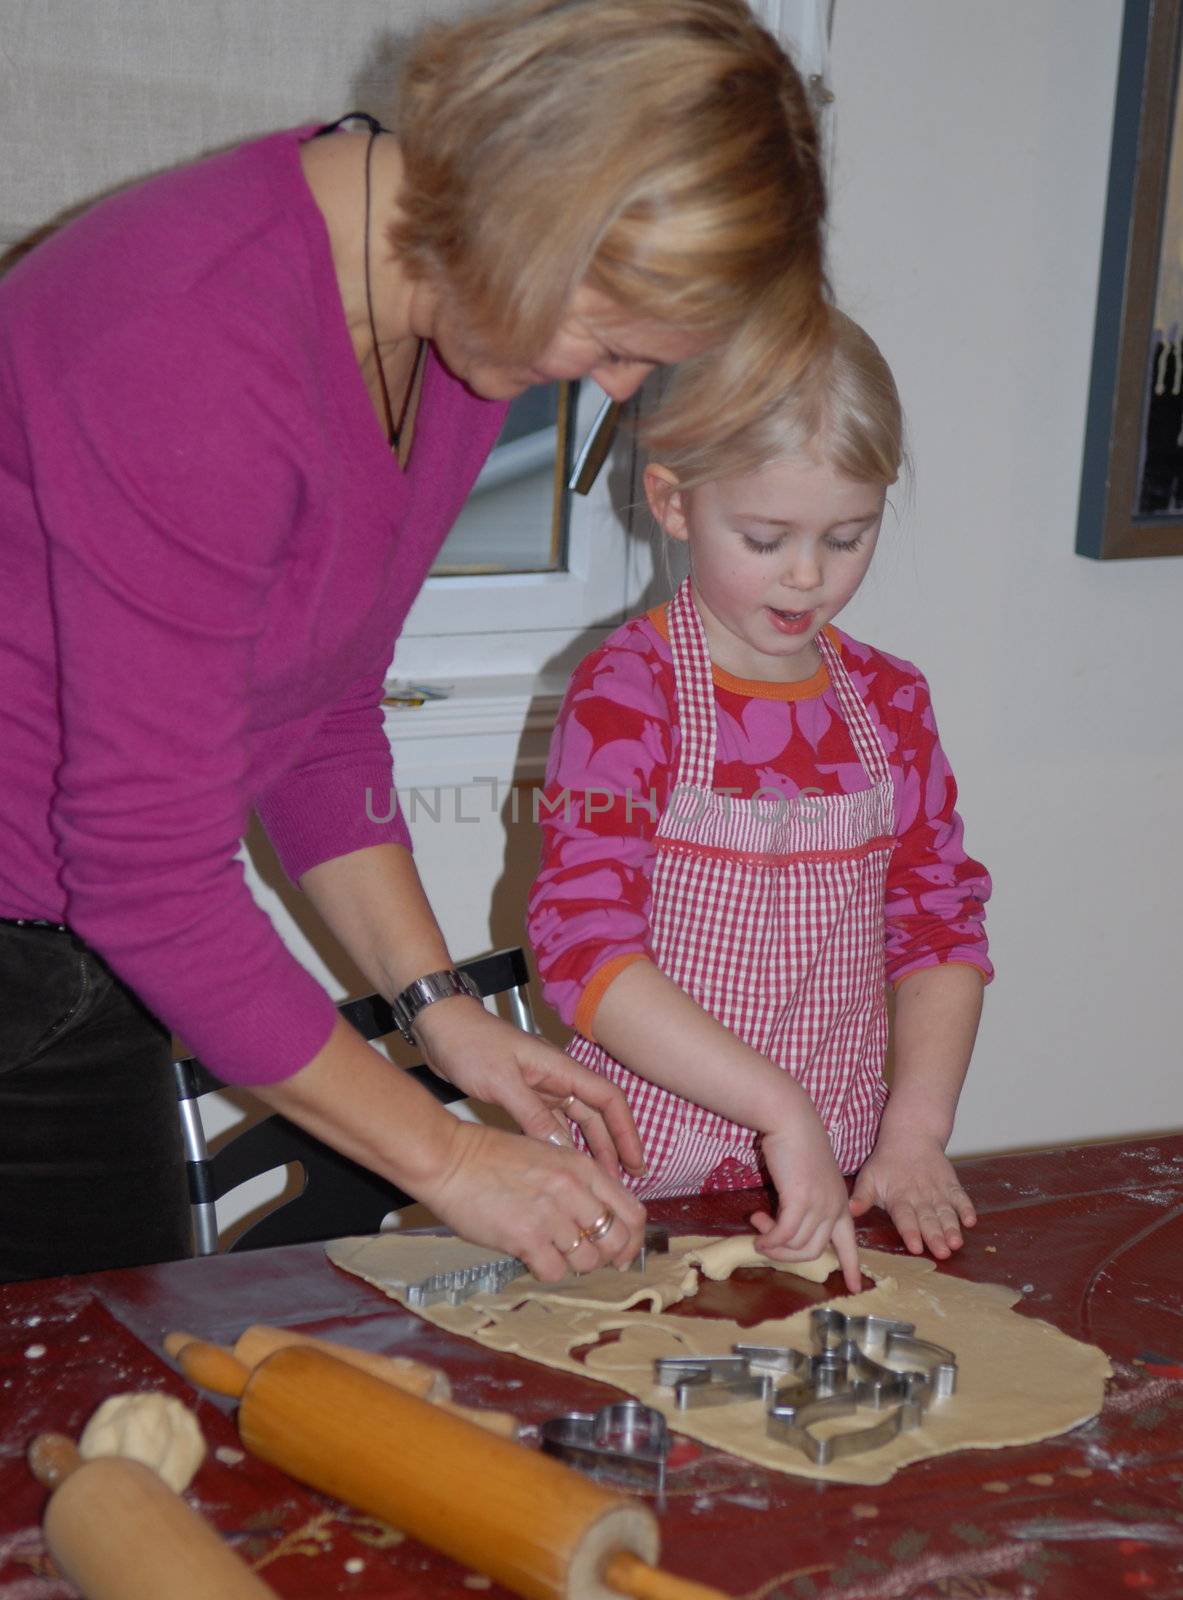 scandinavian life-making cookies by Bildehagen